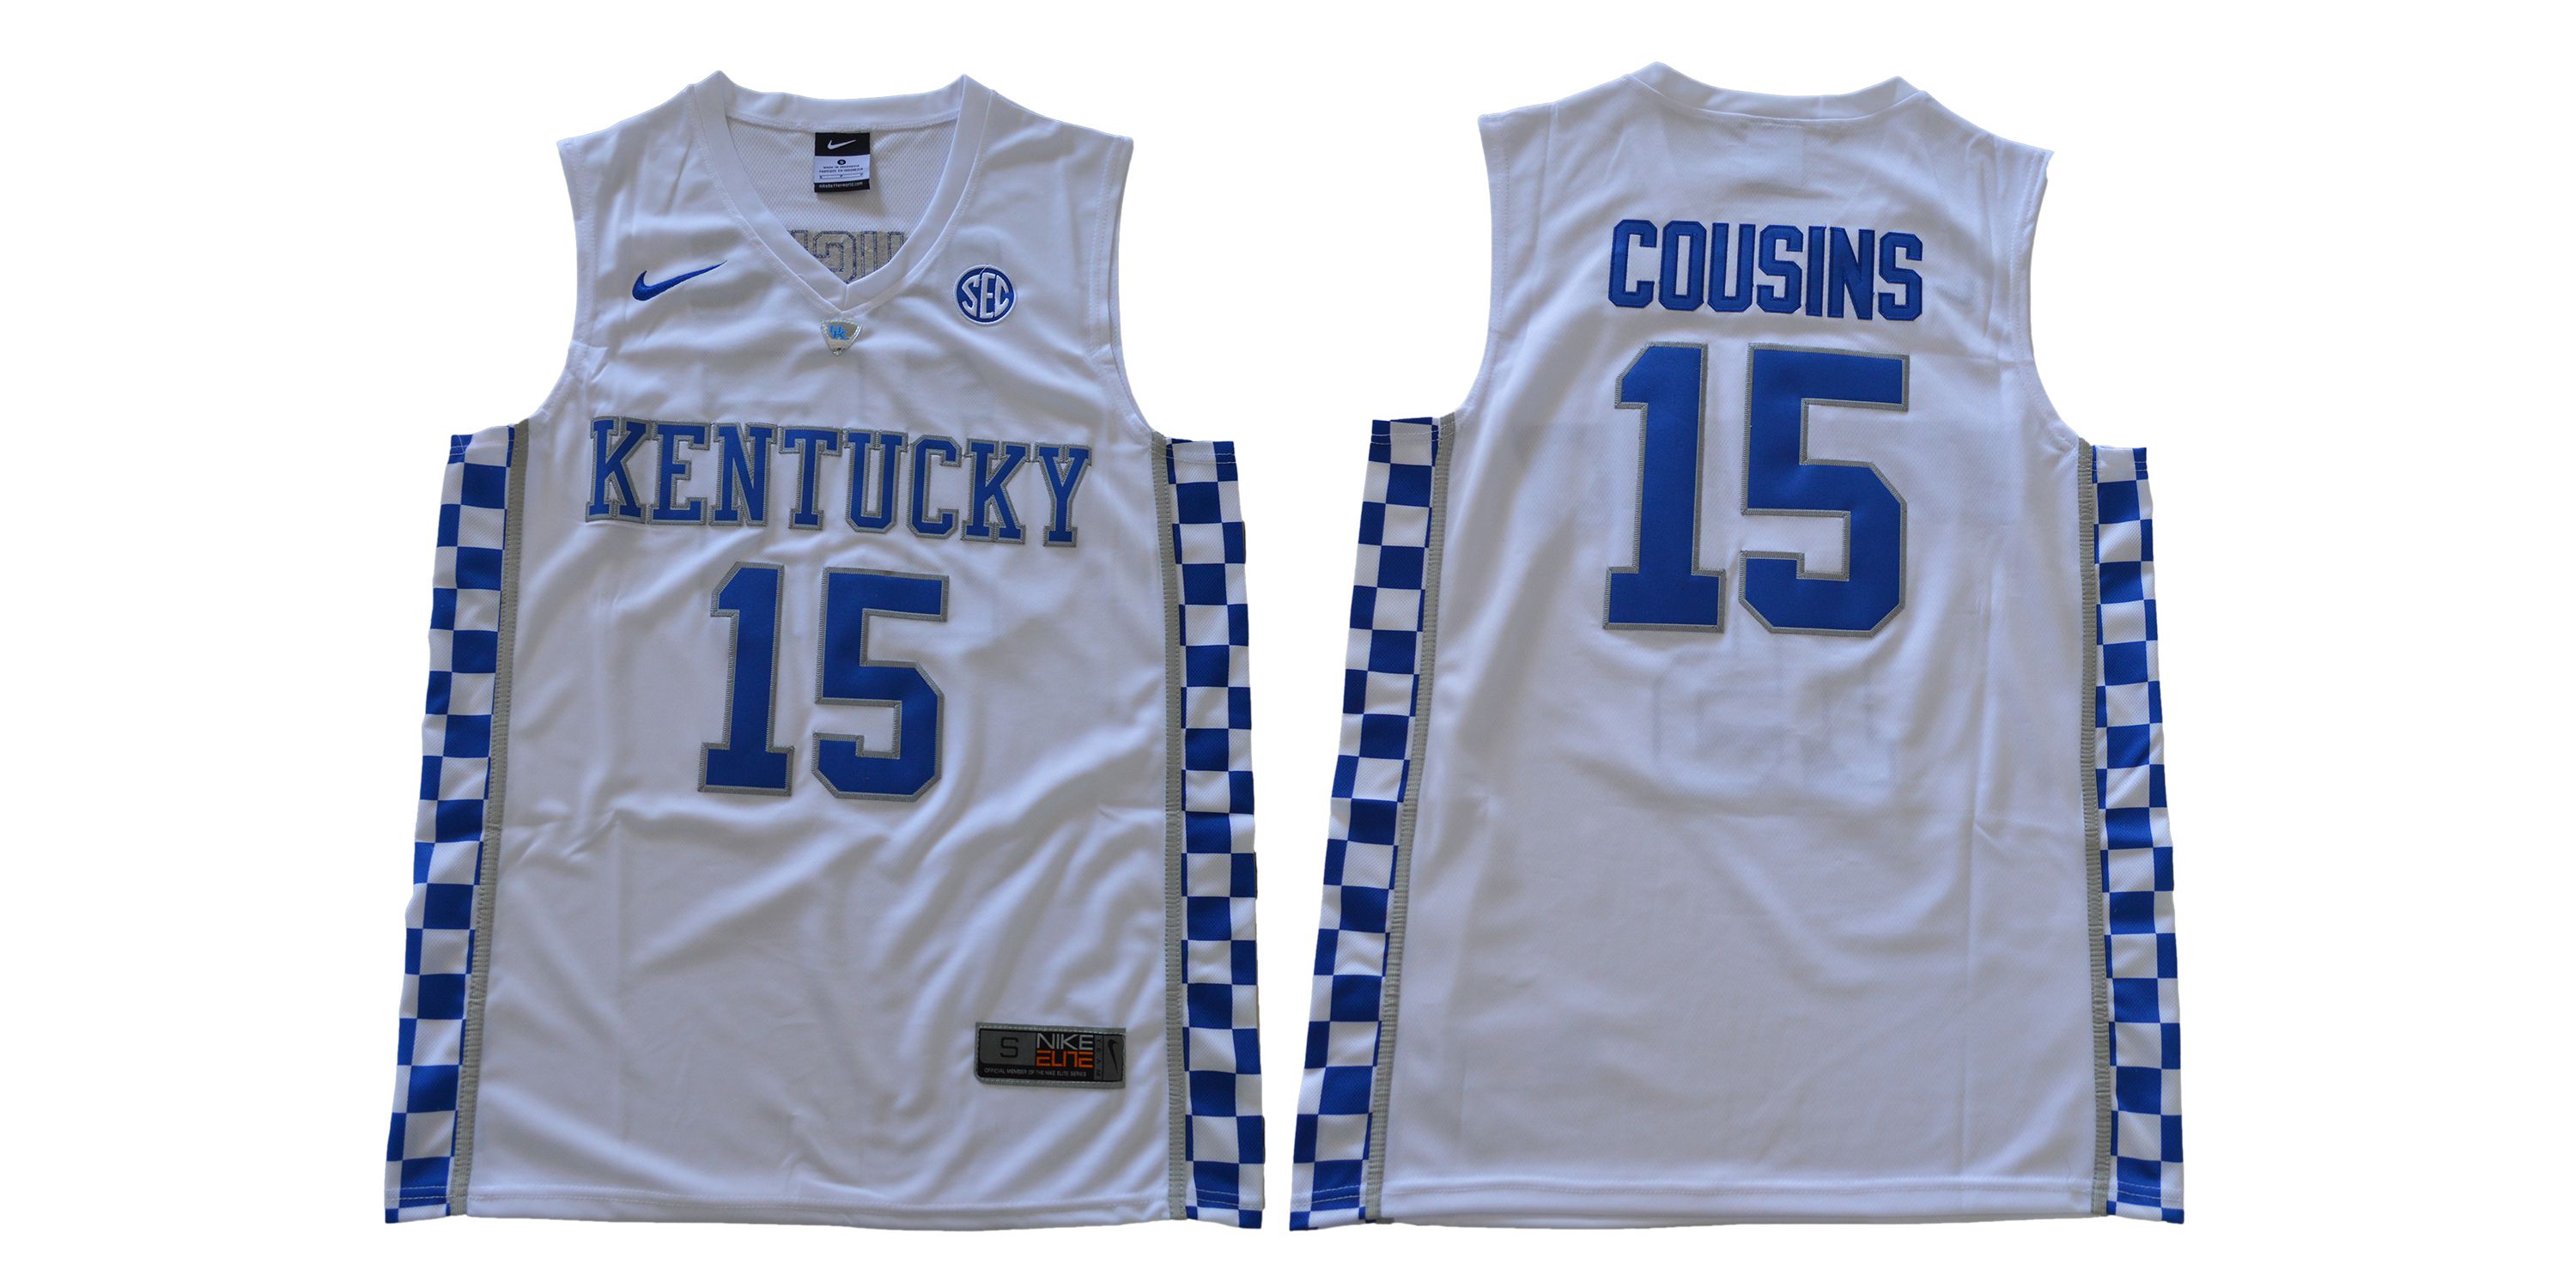 Men Kentucky Wildcats 15 Cousins White NBA NCAA Jerseys